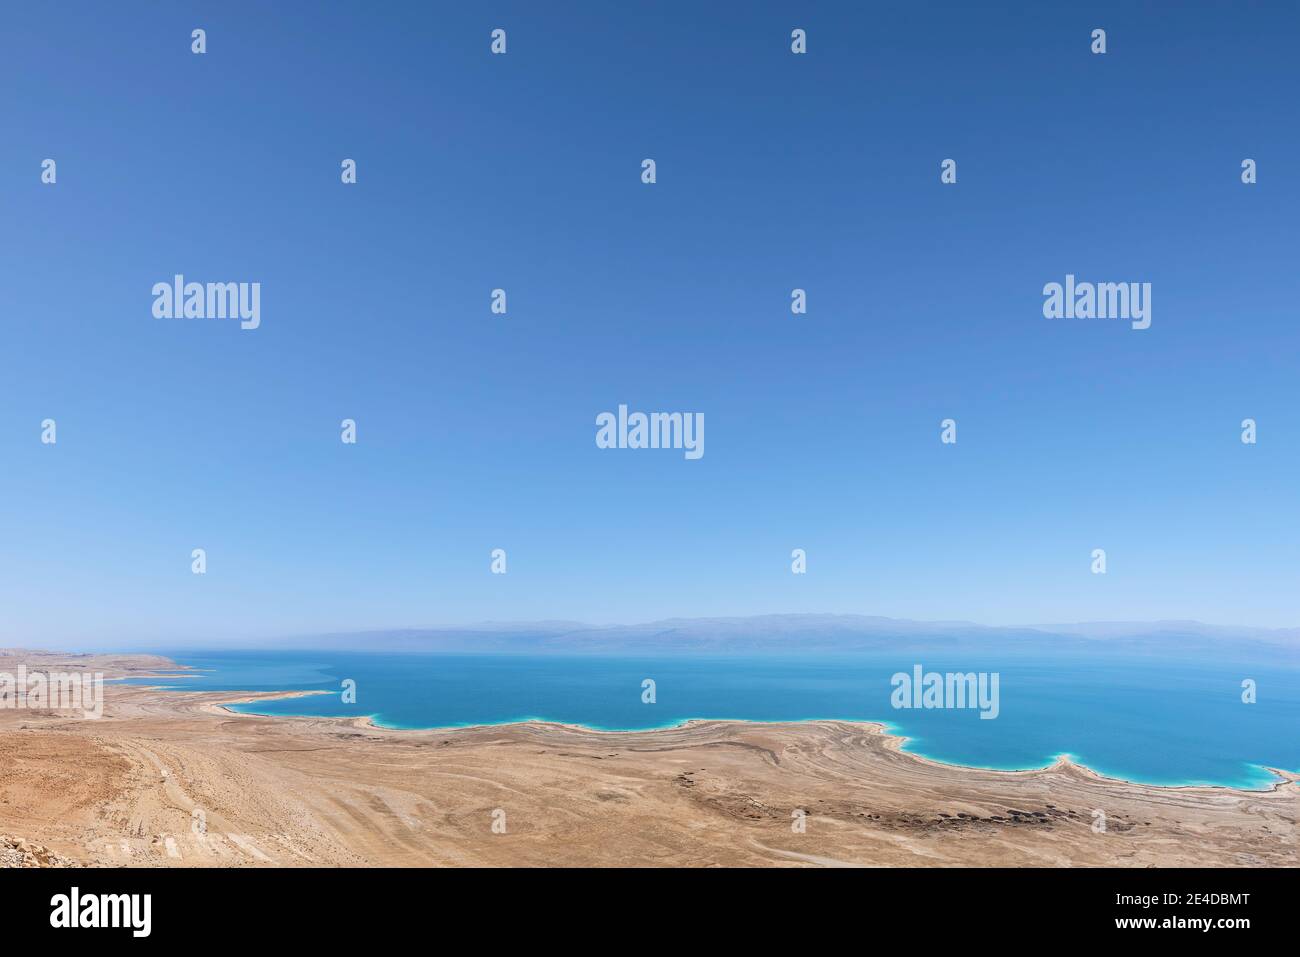 Une vue sur la mer Morte, la plus basse place sur terre Banque D'Images